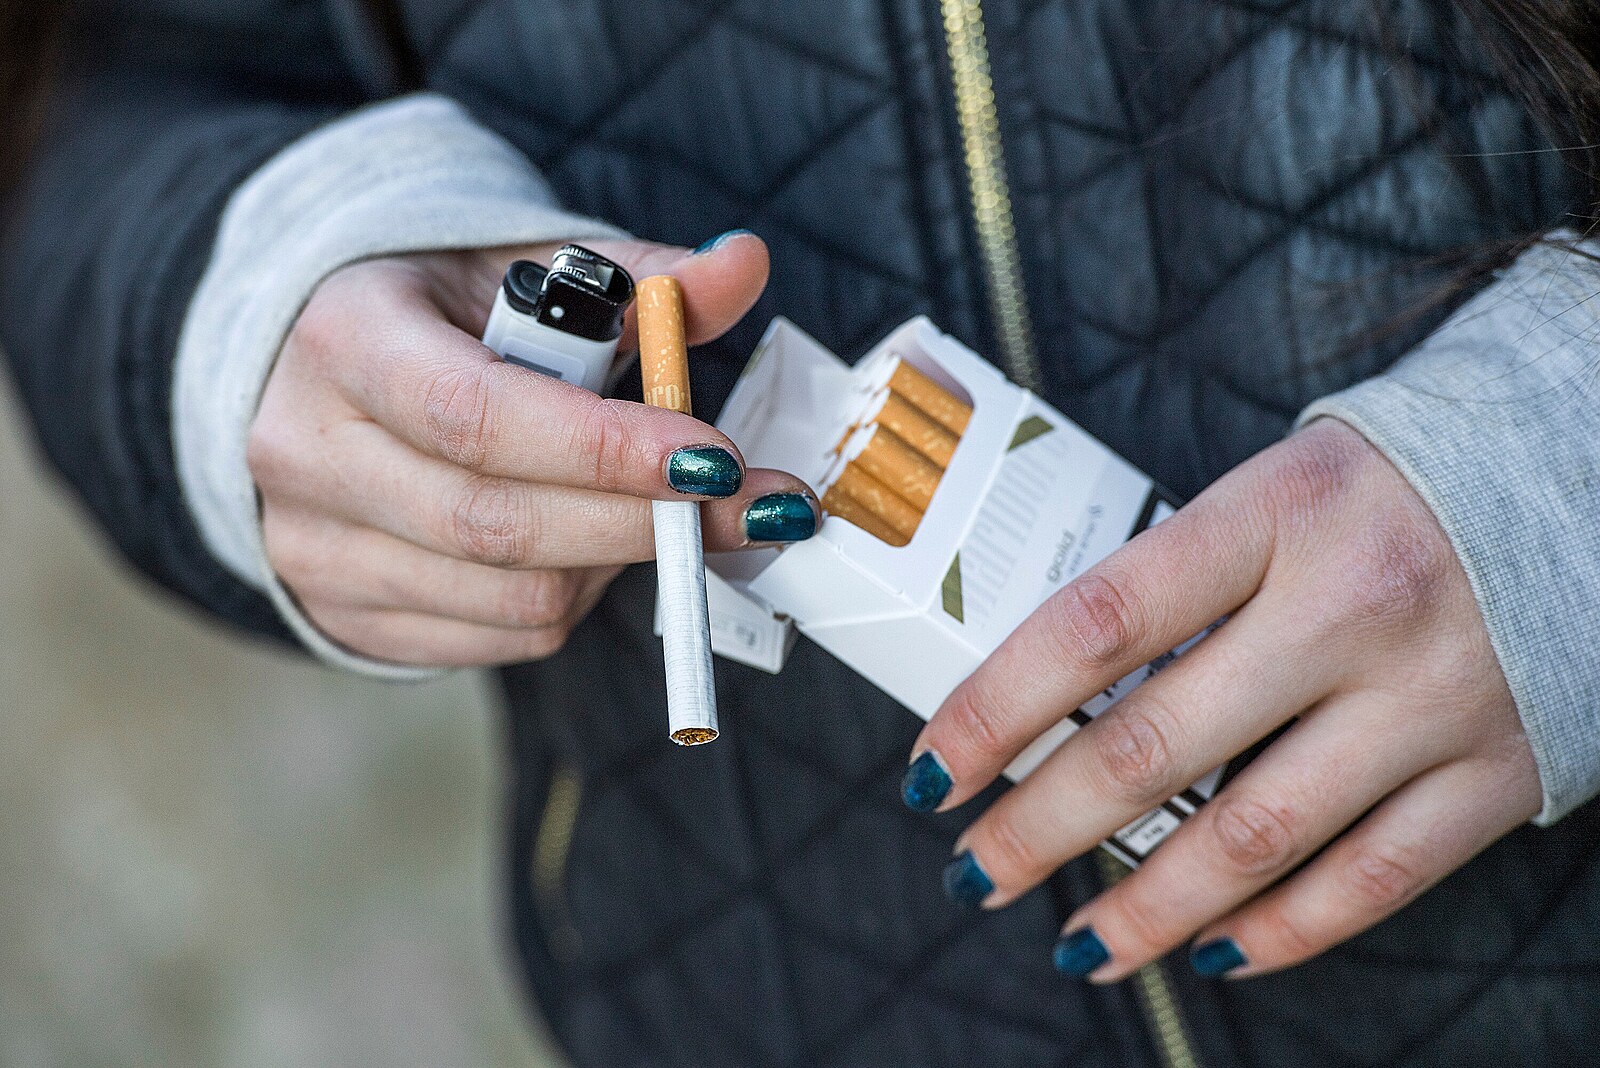 Od ledna stoupnou ceny cigaret zhruba o pět korun. Zdražení ale nemusí  státu zajistit vyšší příjmy | Byznys | Lidovky.cz